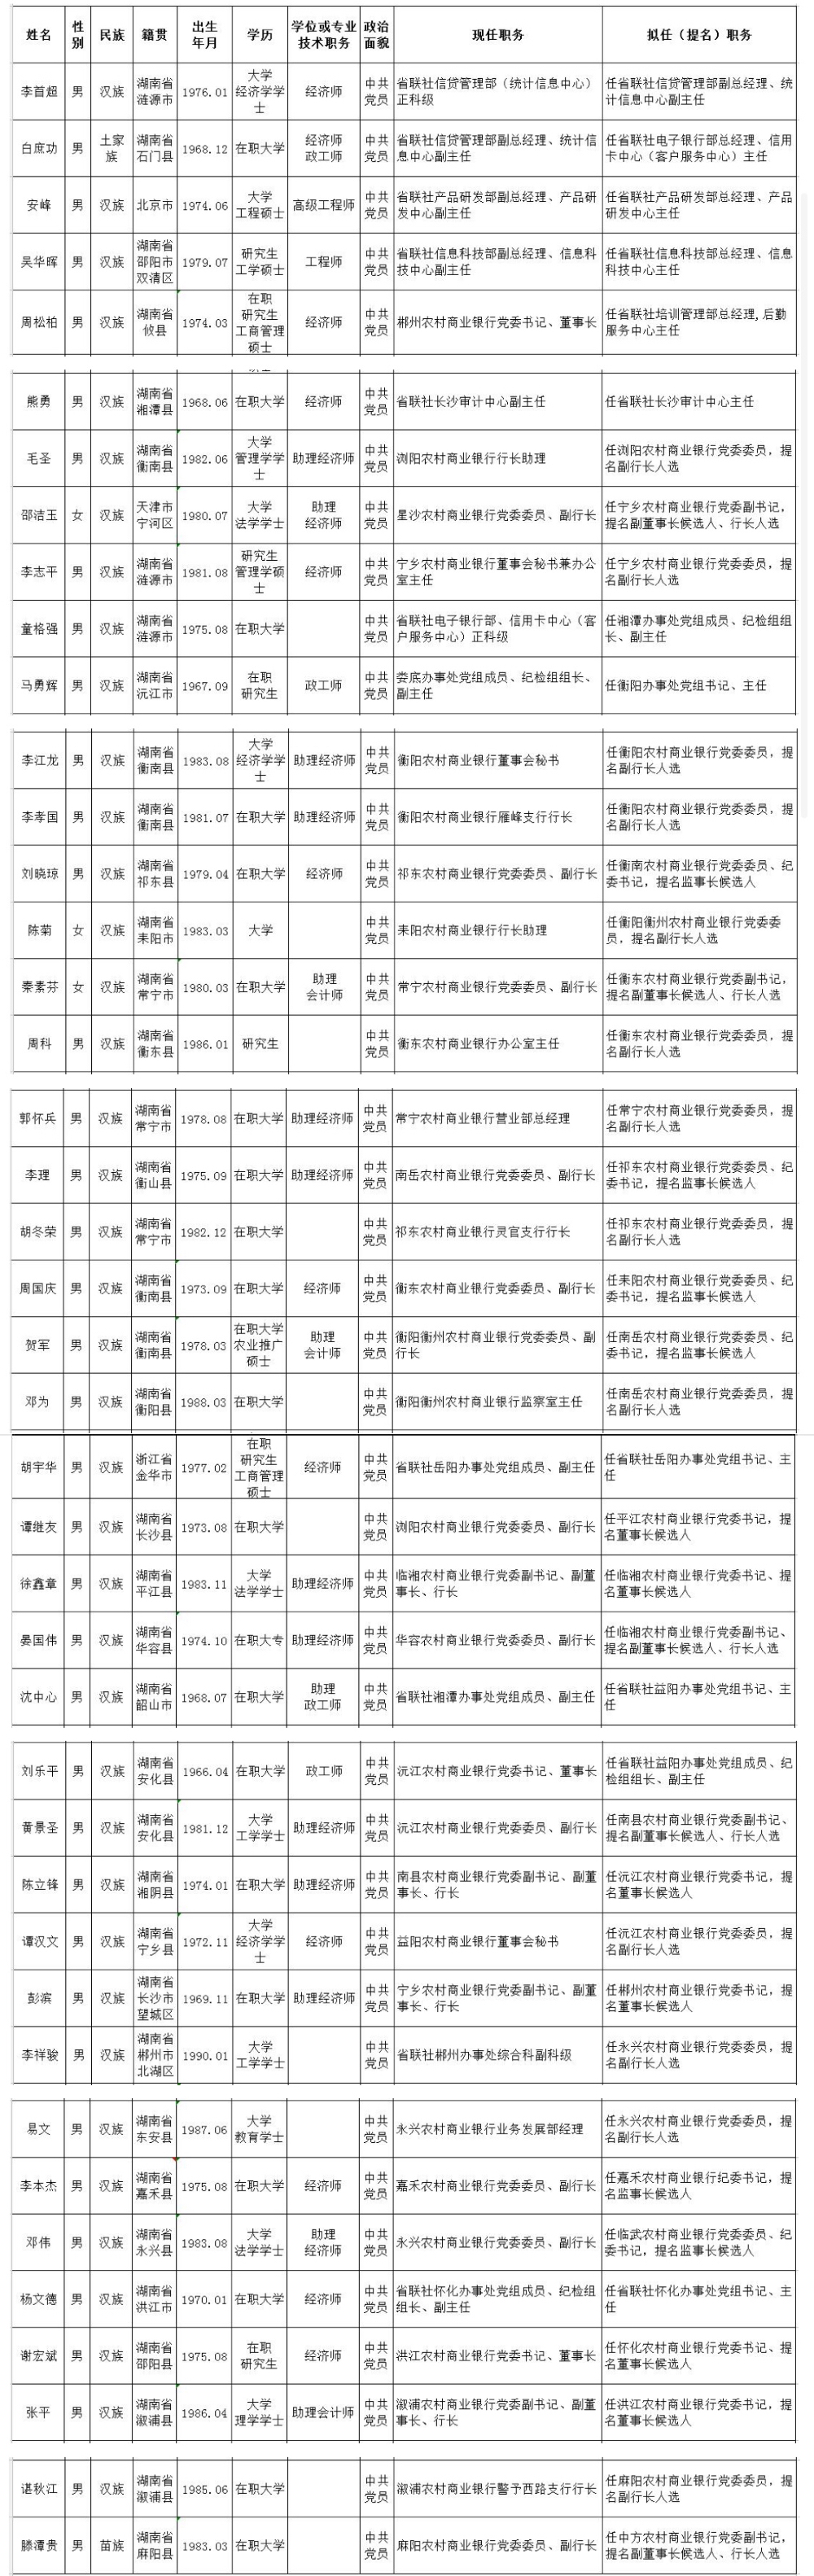 湖南农信联社公示42名拟任职金融干部，含6名农商行董事长